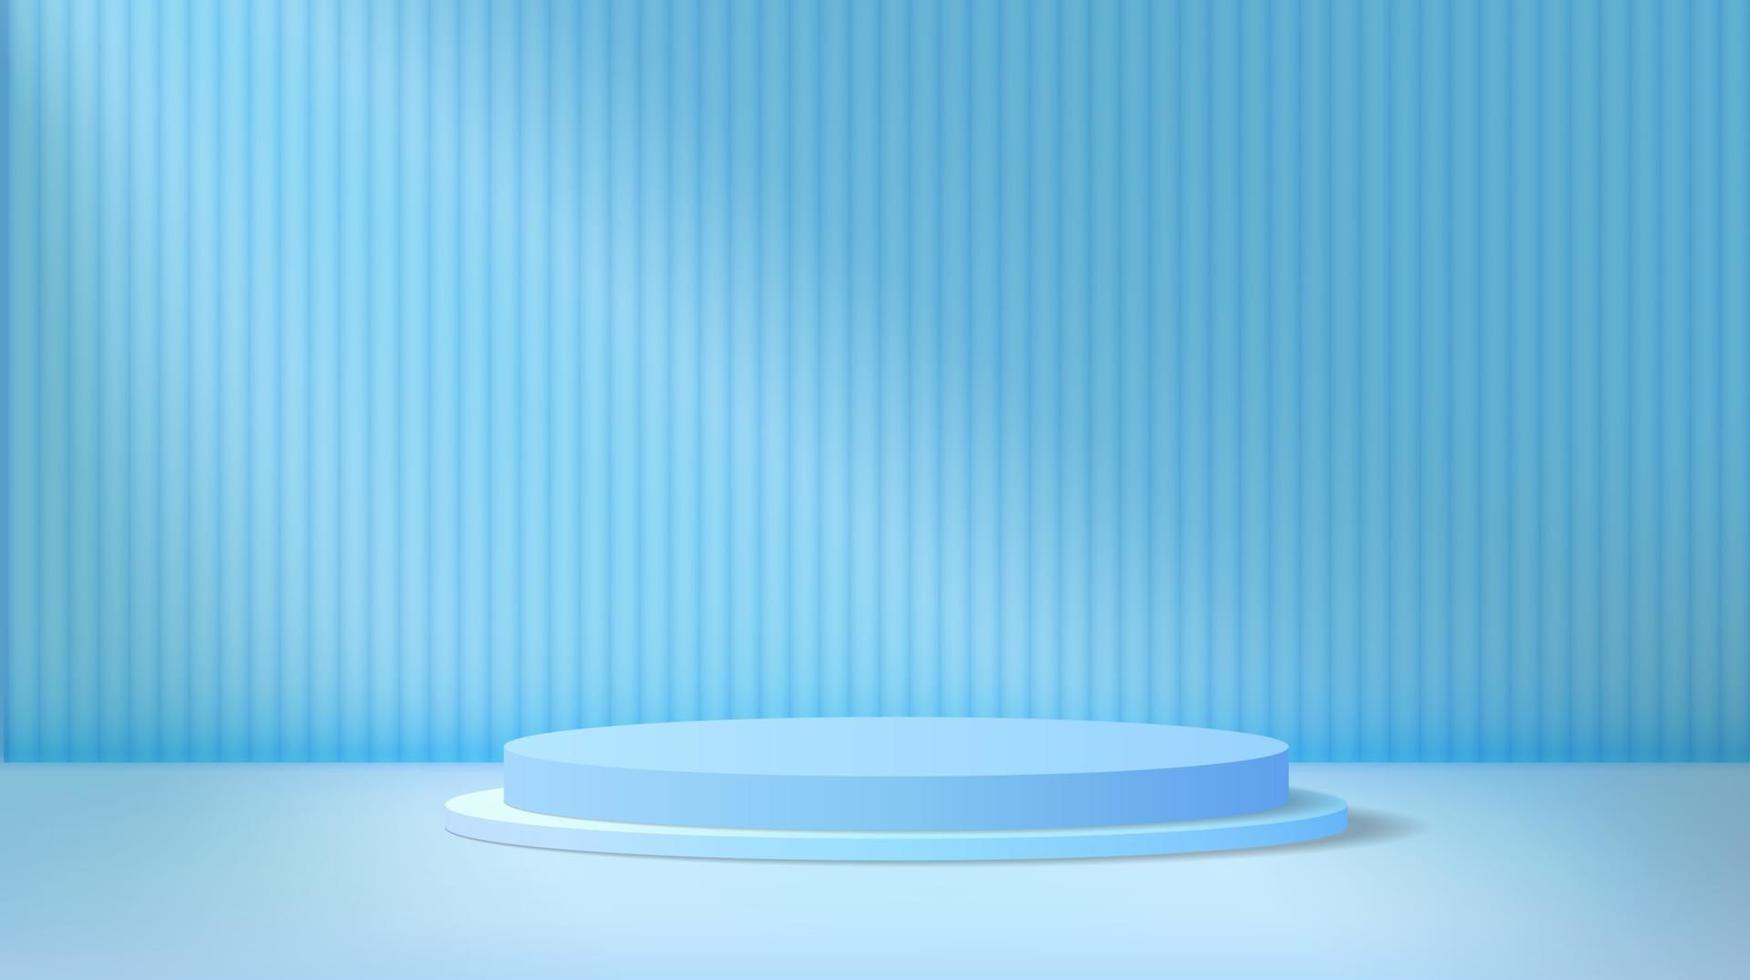 fond de scène minimalis bleu abstrait. podium de piédestal de cylindre sur un fond bleu pastel. scène de scène pour la présentation du produit. plate-forme de rendu 3d géométrique de vecteur